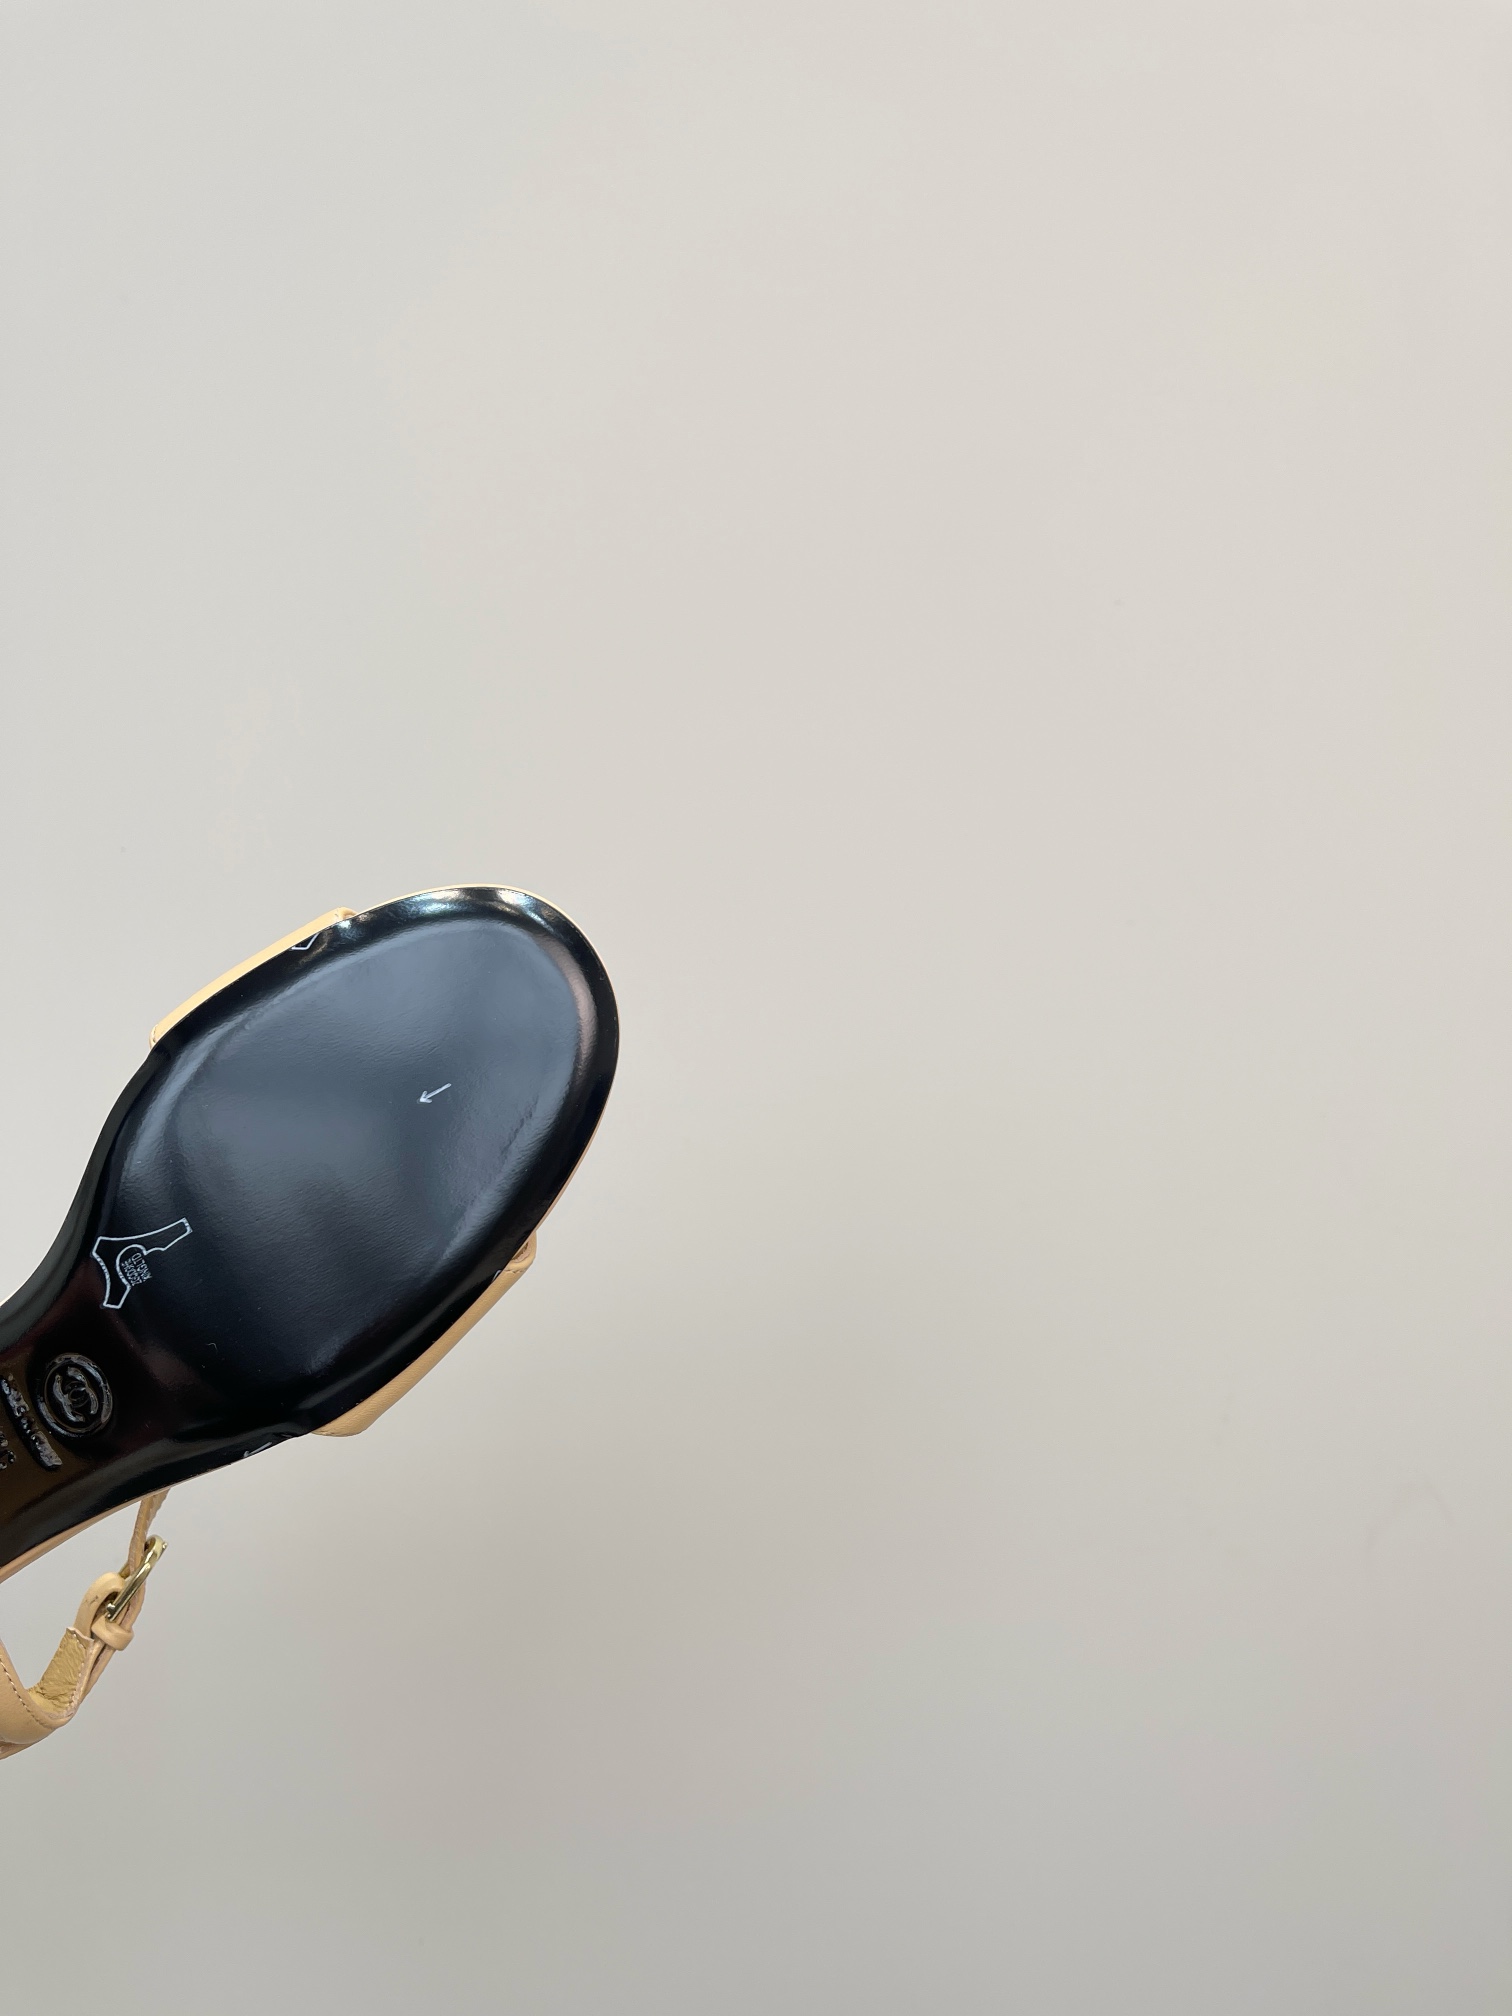 小香24早春新品专柜经典款粗跟凉鞋系列上新时尚圈的绝绝子搭配将演绎着细致极简永不褪去的经典元素展现与众不